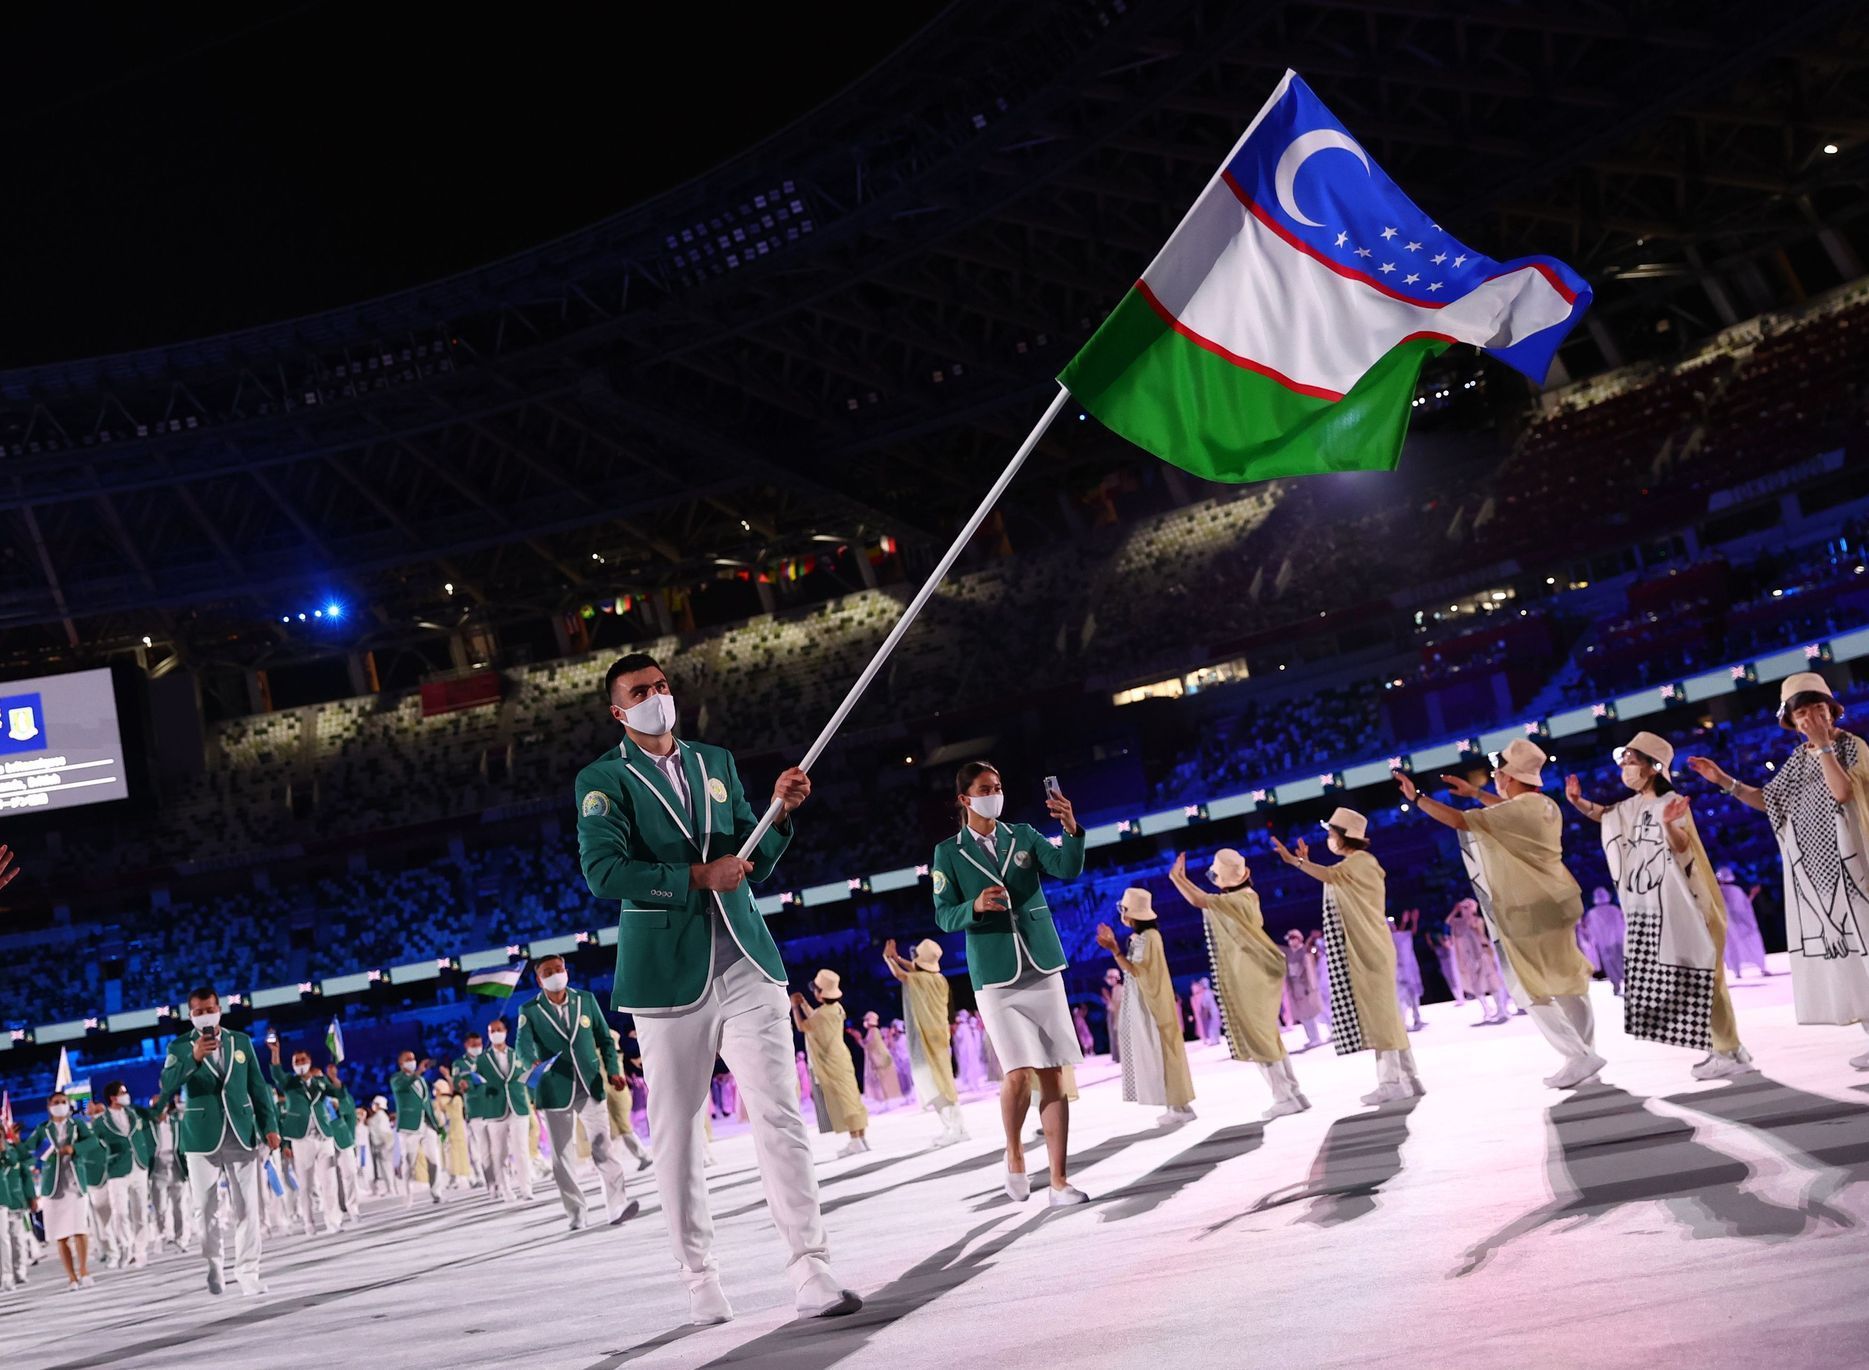 Uzbecká výprava při slavnostním zahájení olympiády v Tokiu 2020